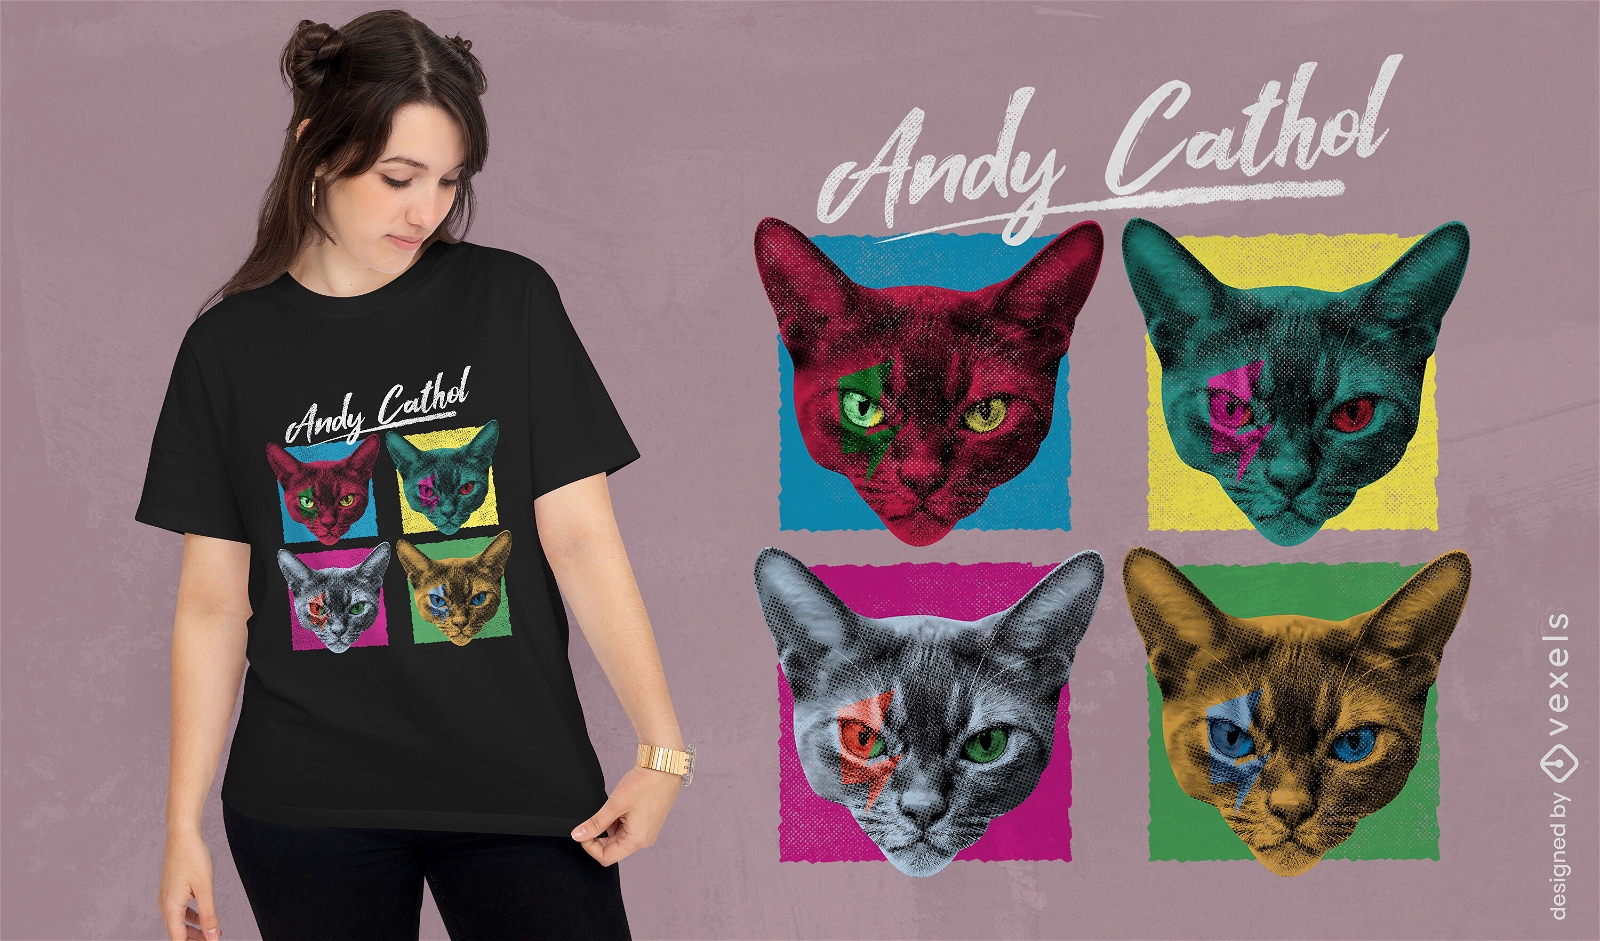 Gatos em t-shirt estilo par?dia pop art psd